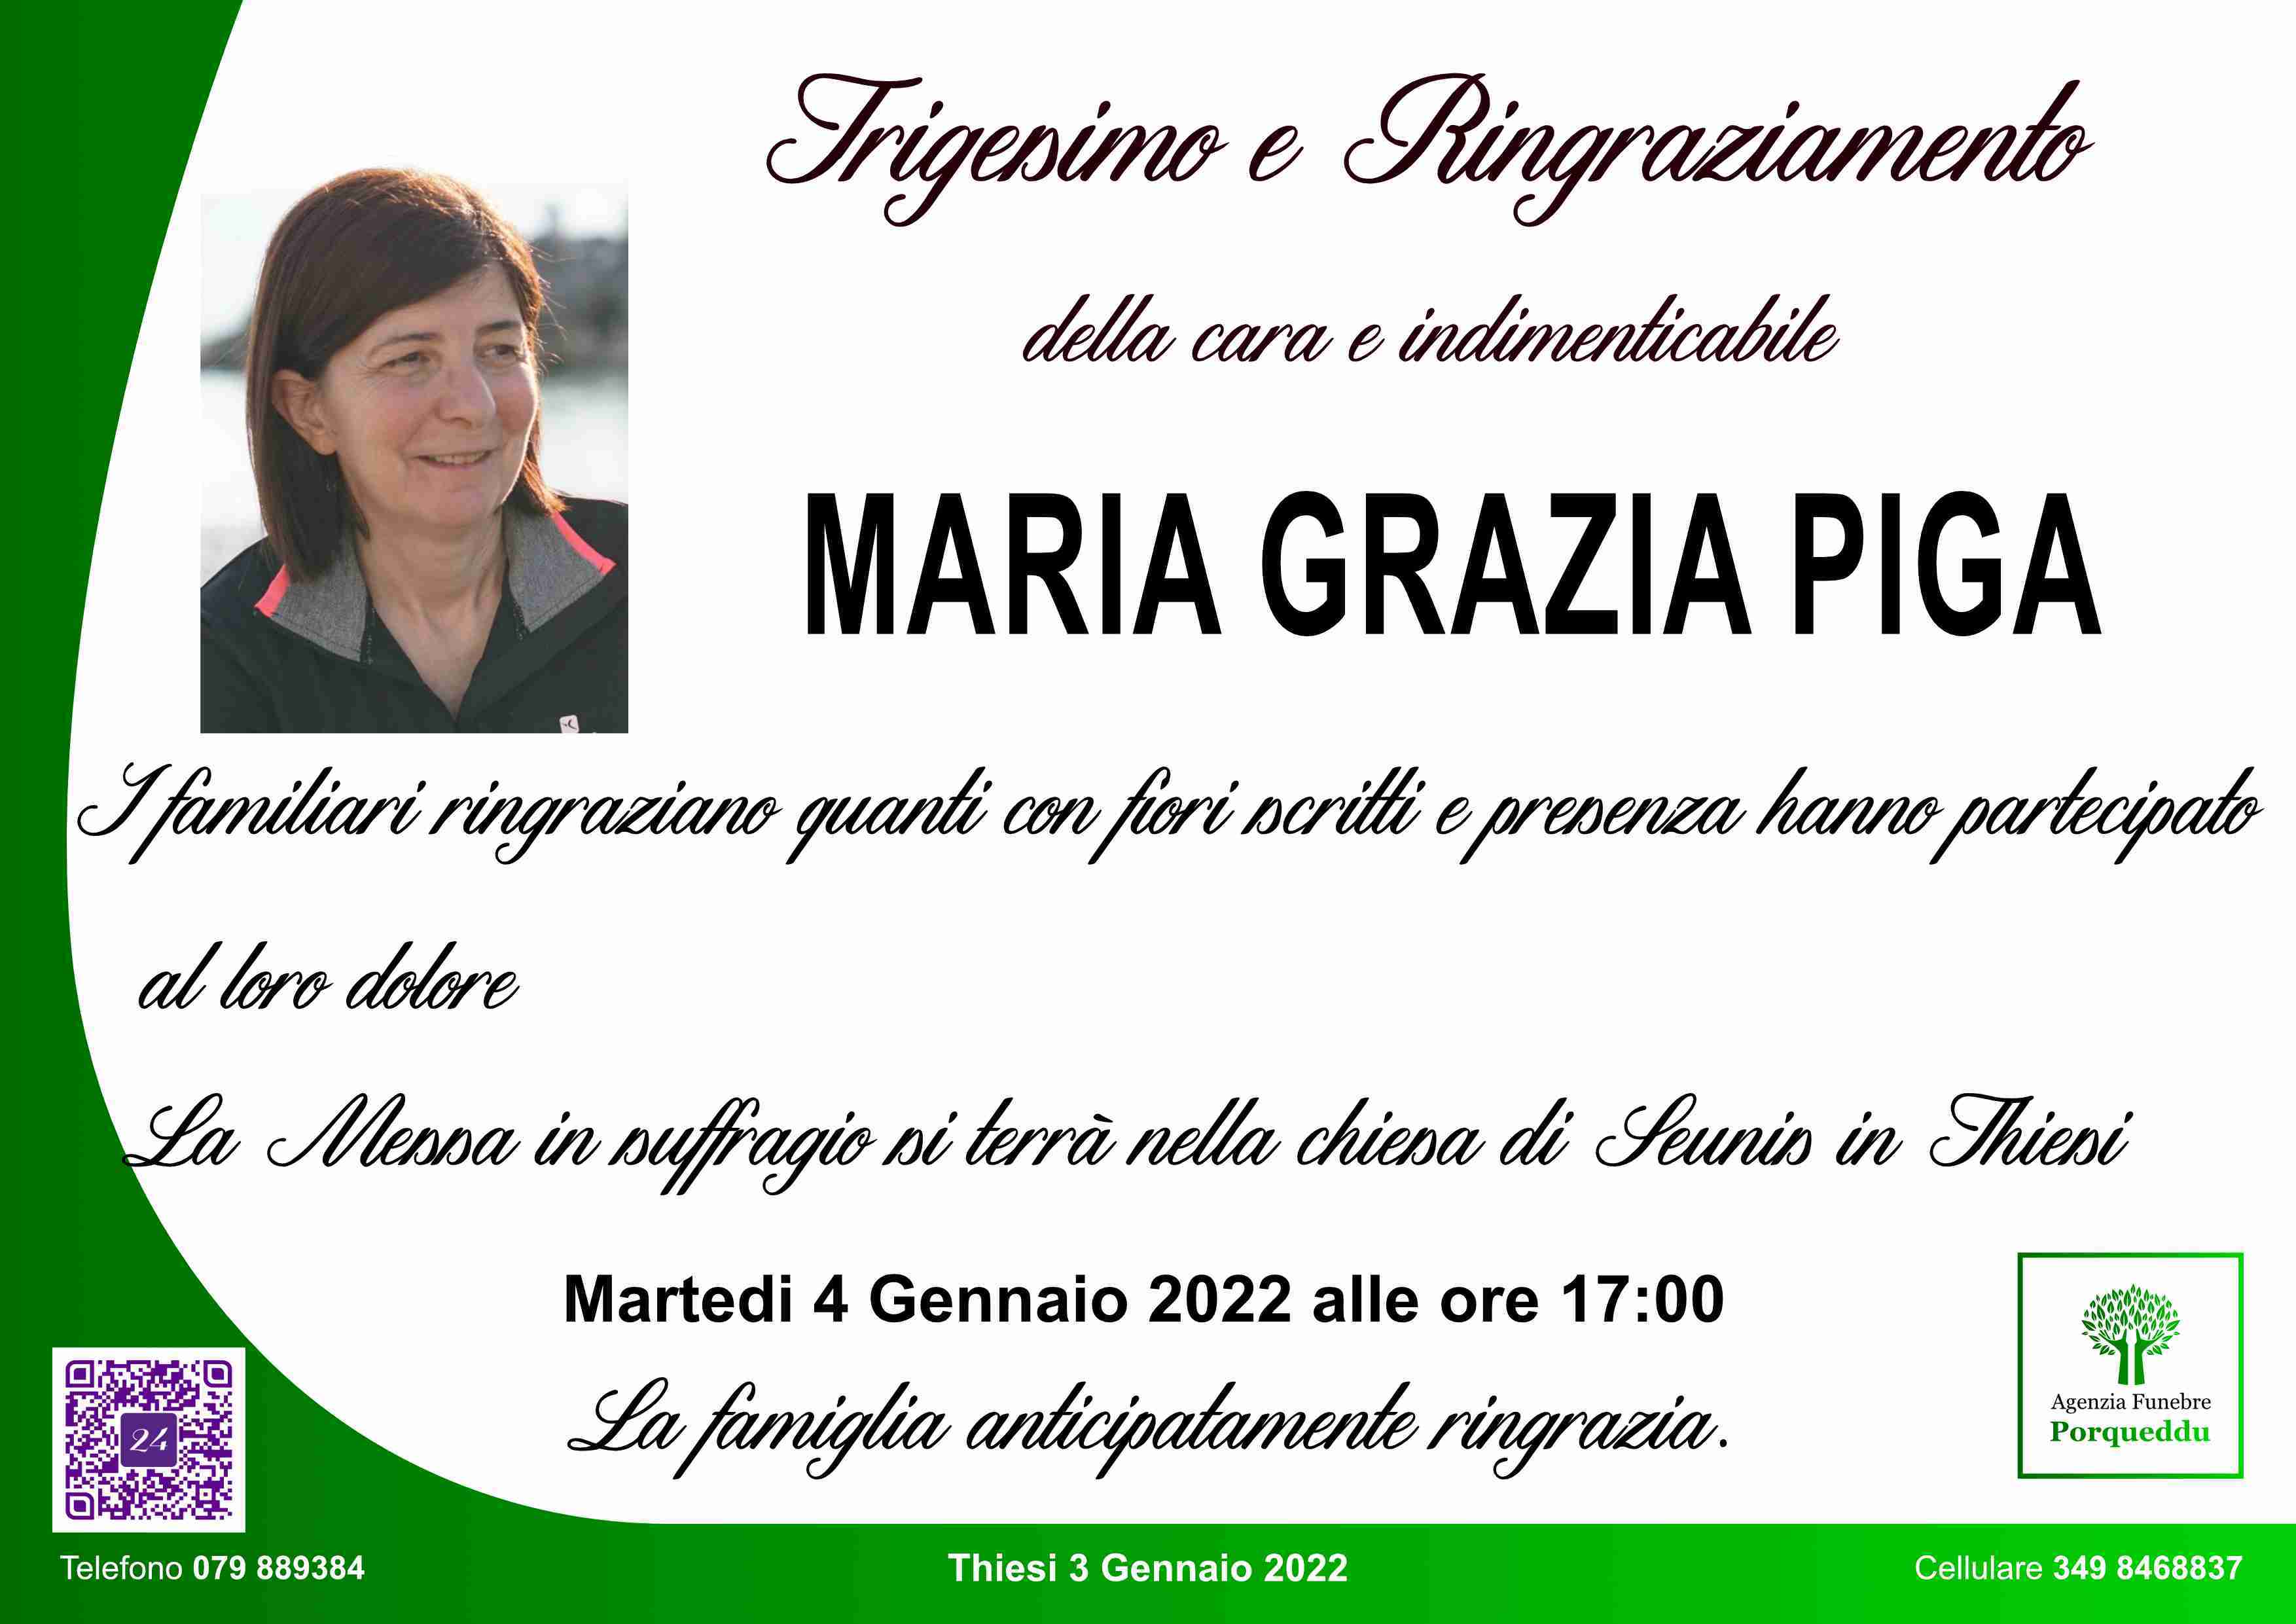 Maria Grazia Piga